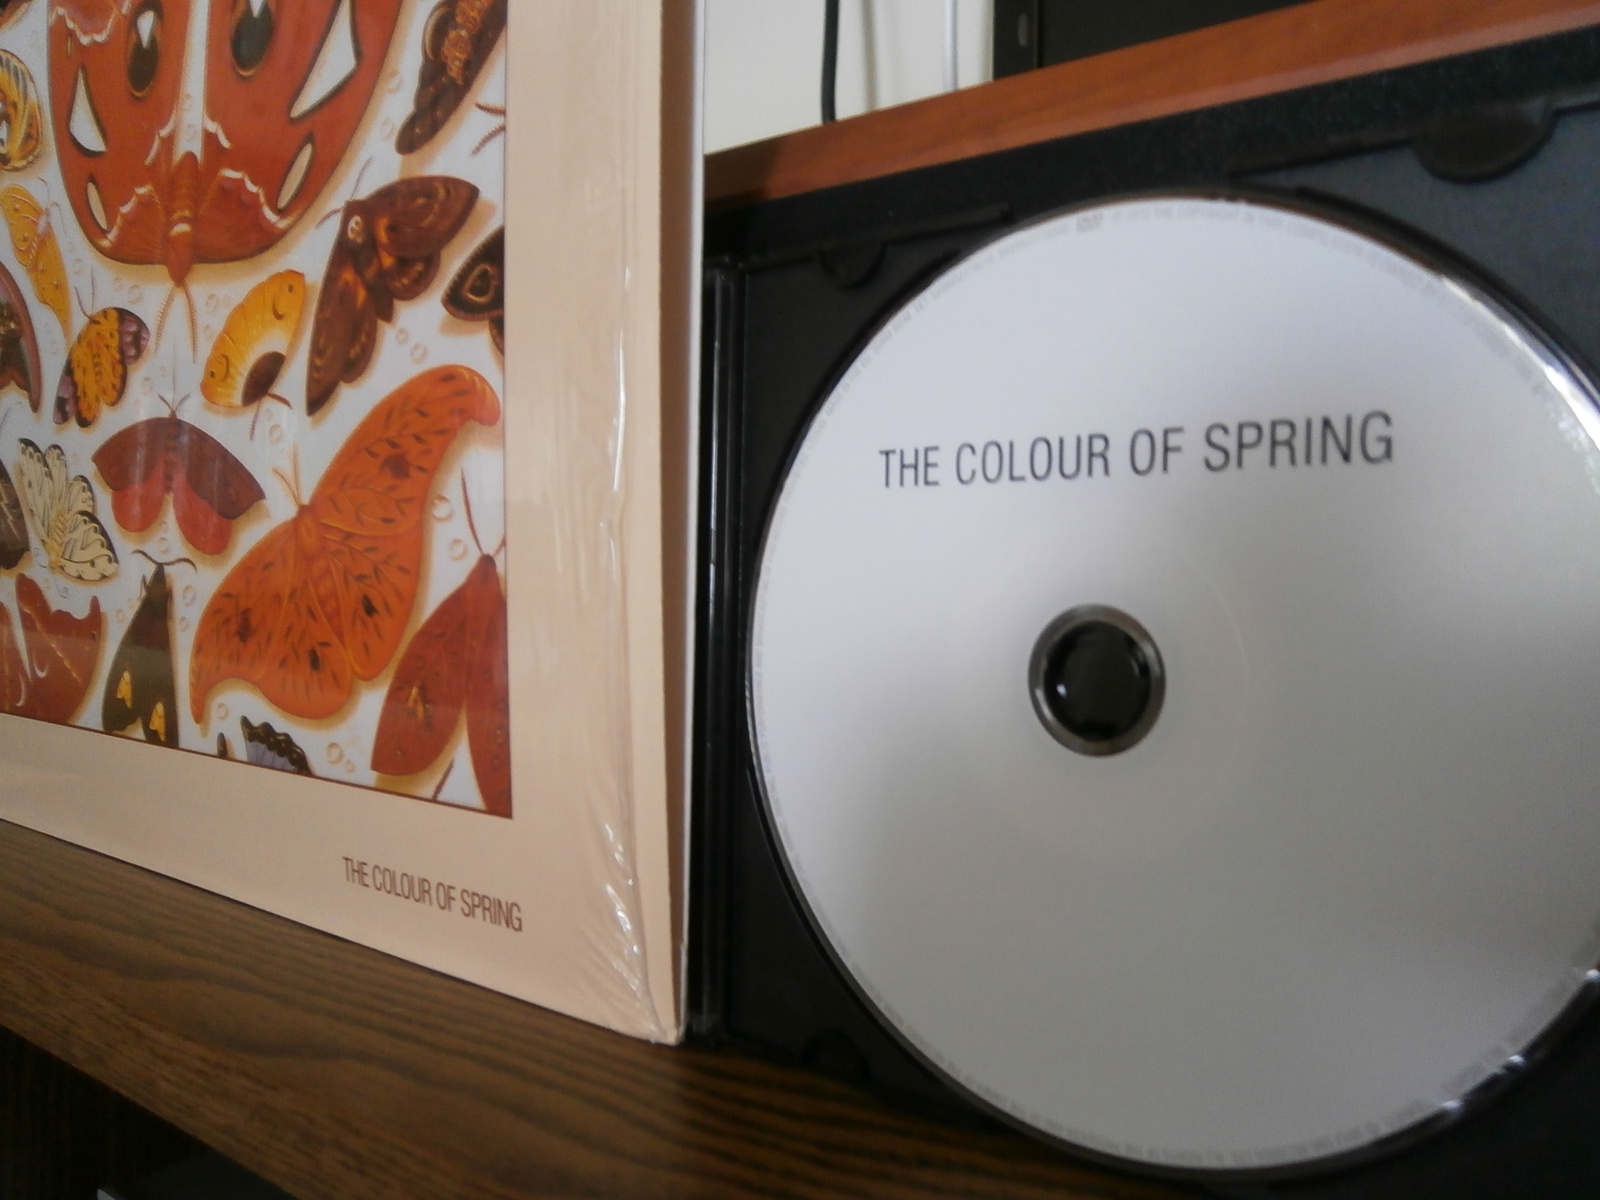 A tavasz színe dvd